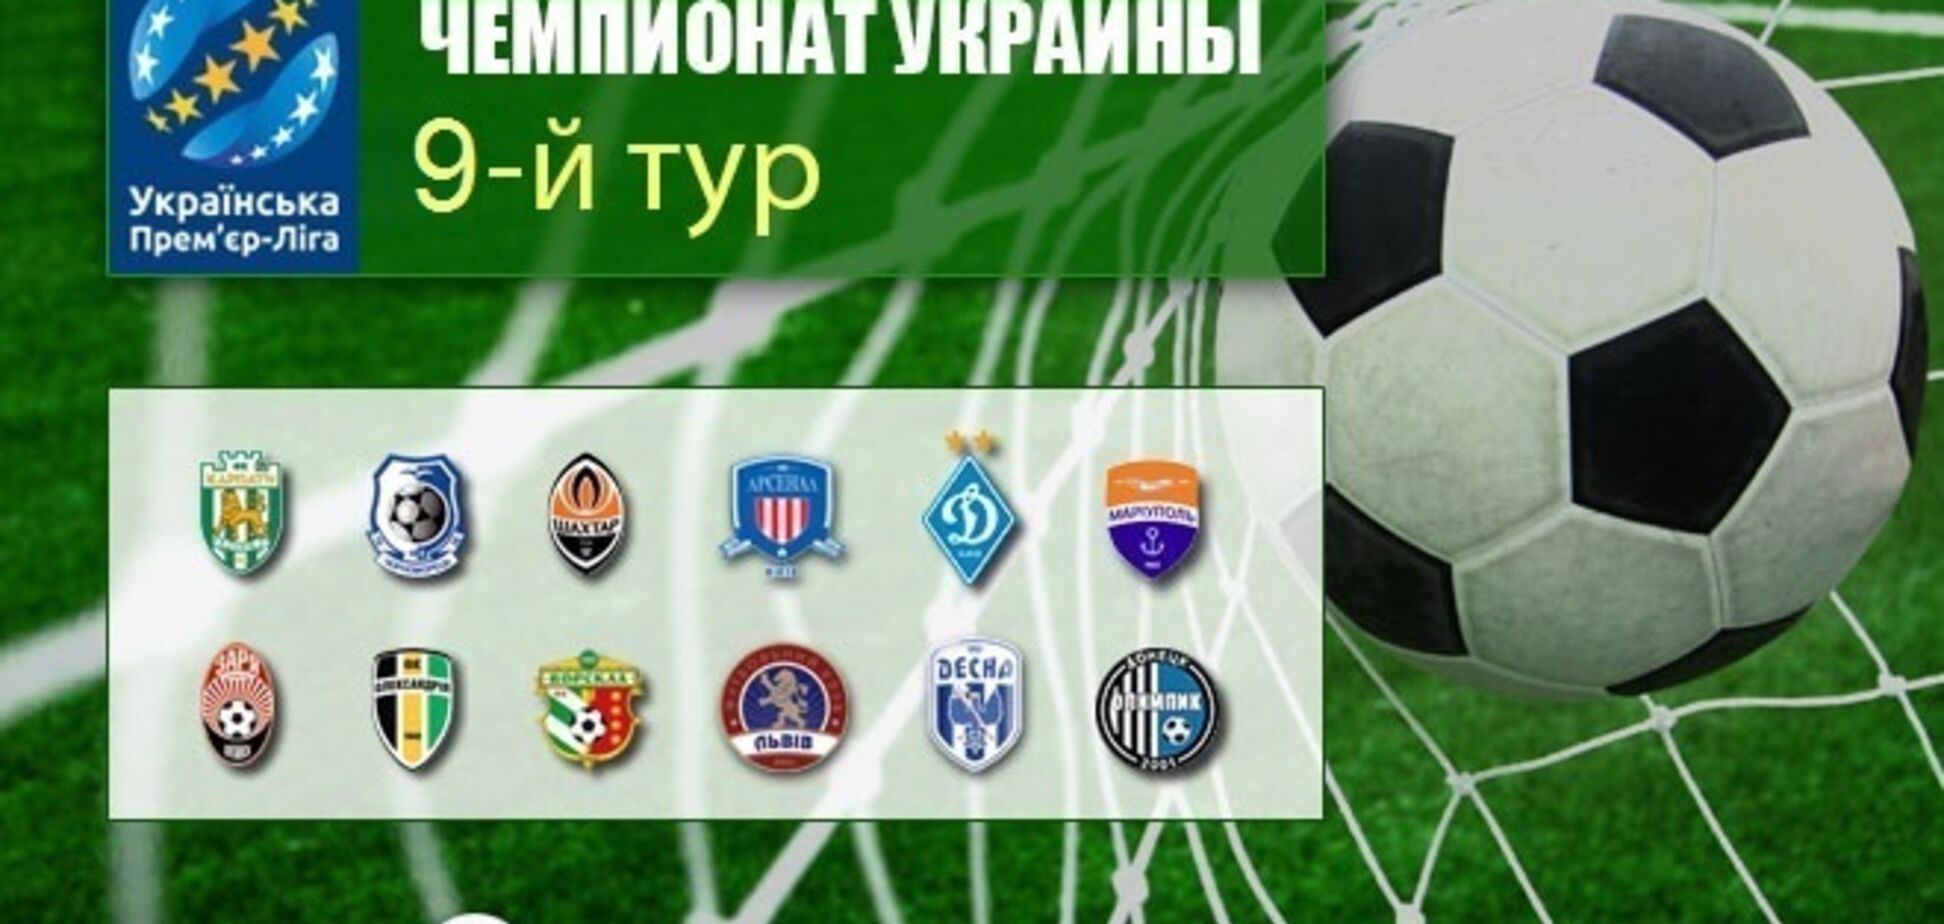 9-й тур чемпионата Украины по футболу: результаты и обзоры